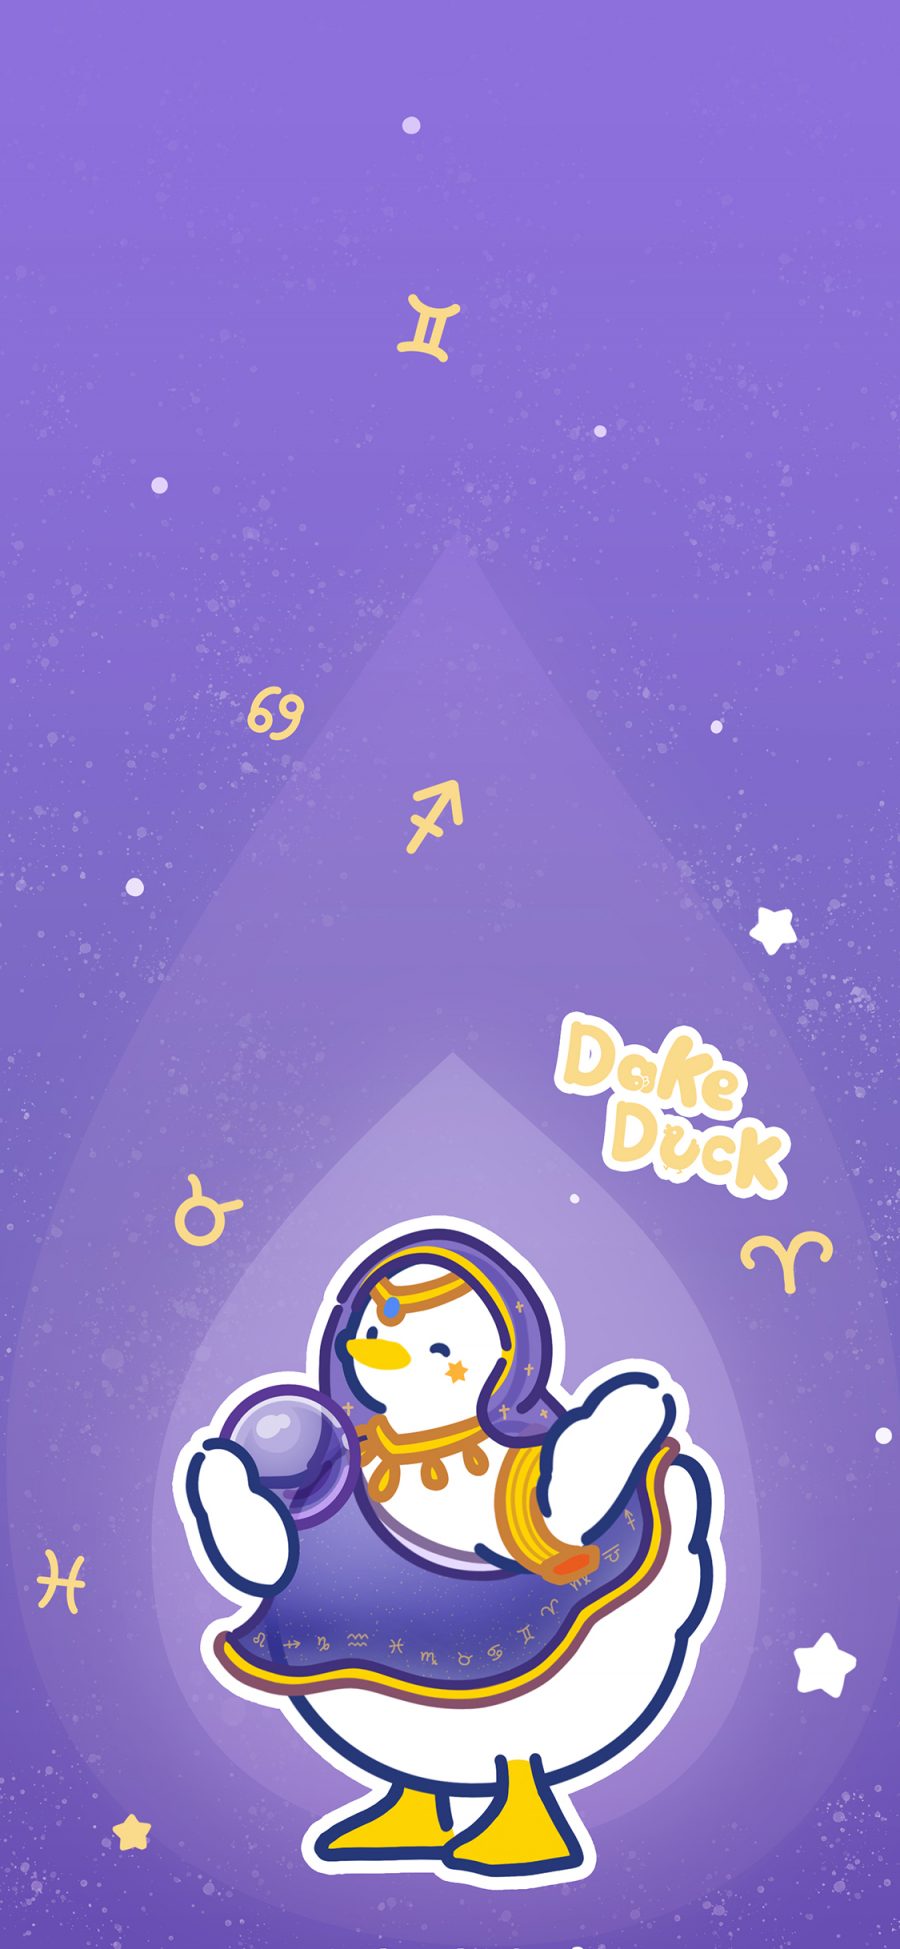 [2436×1125]大可鸭 占卜师 紫 星座 苹果手机动漫壁纸图片